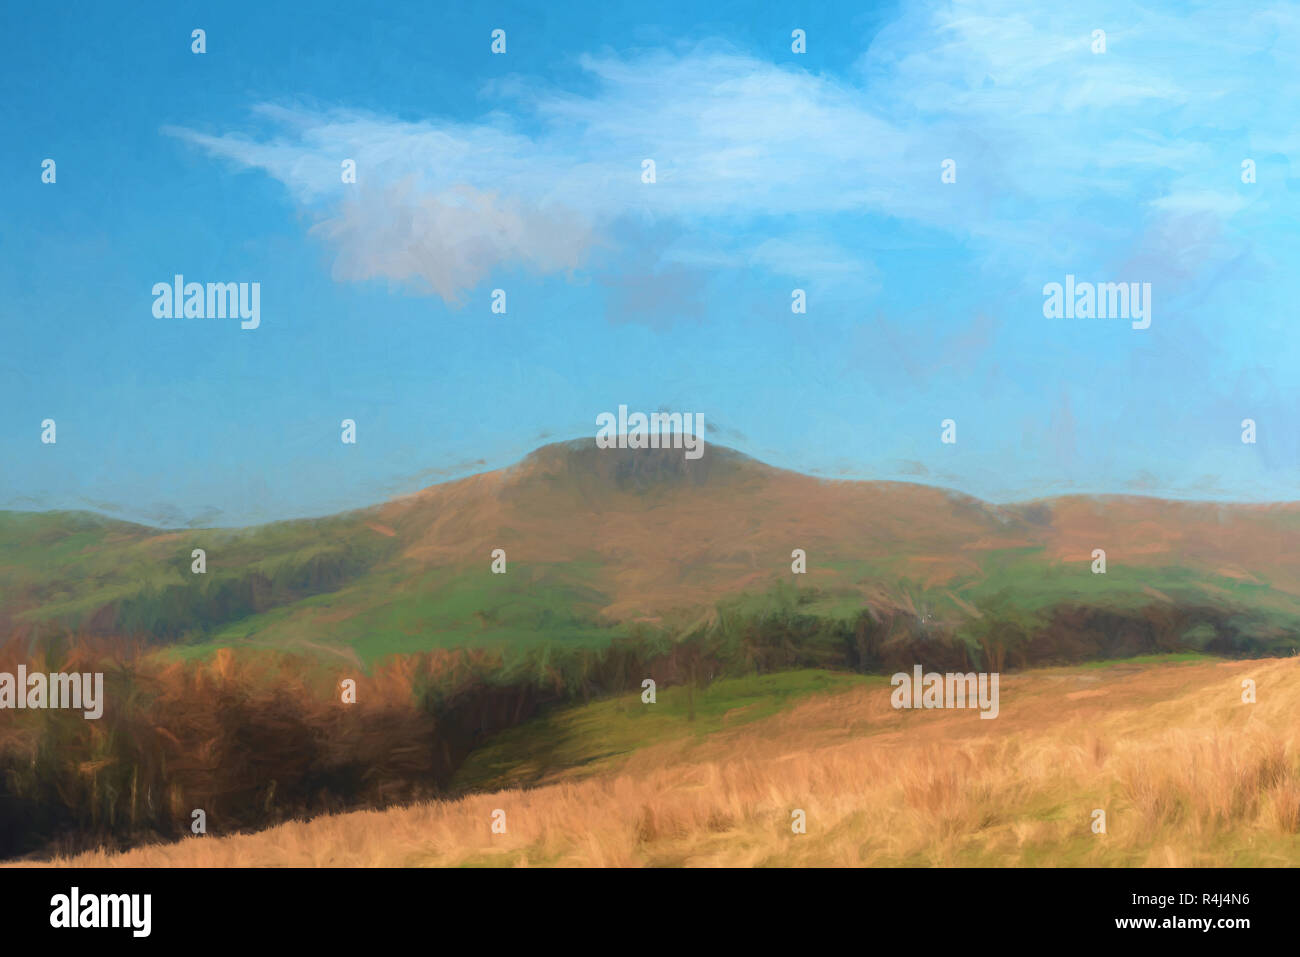 Un acquerello digitale della vista di una lontana Shutlingsloe hill nel Cheshire, il Parco Nazionale di Peak District, UK. Foto Stock